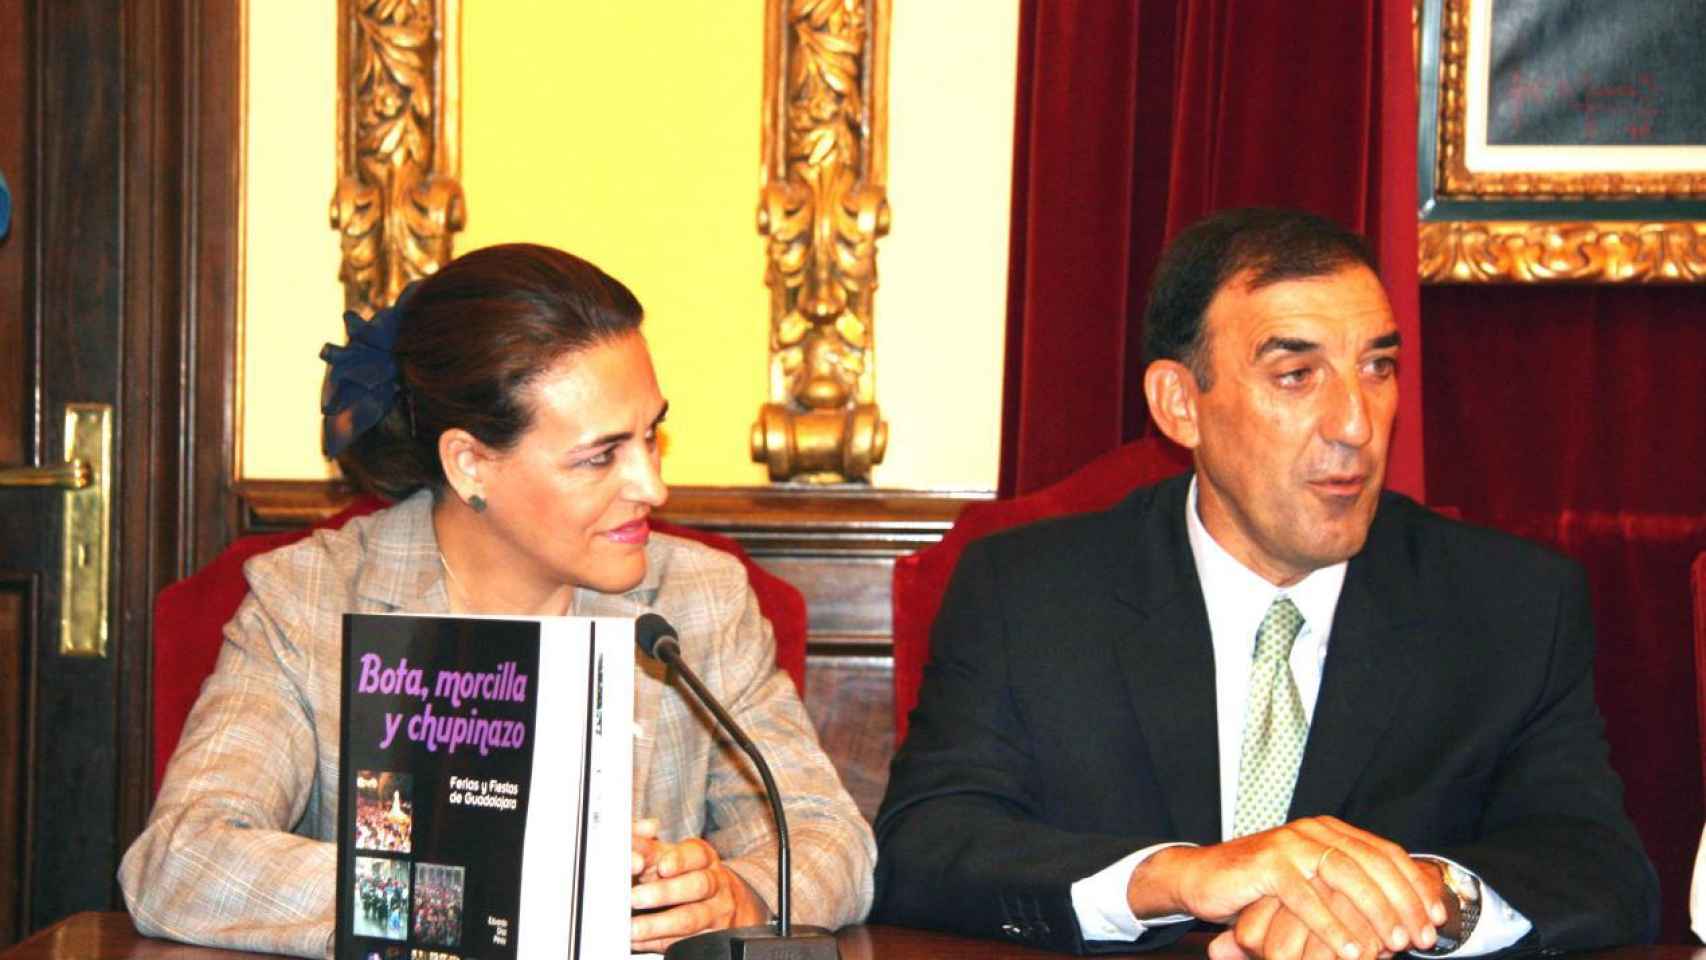 Magdalena Valerio, durante su etapa en Castilla-La Mancha, presentando el libro 'Bota, morcilla y chupinazo'.